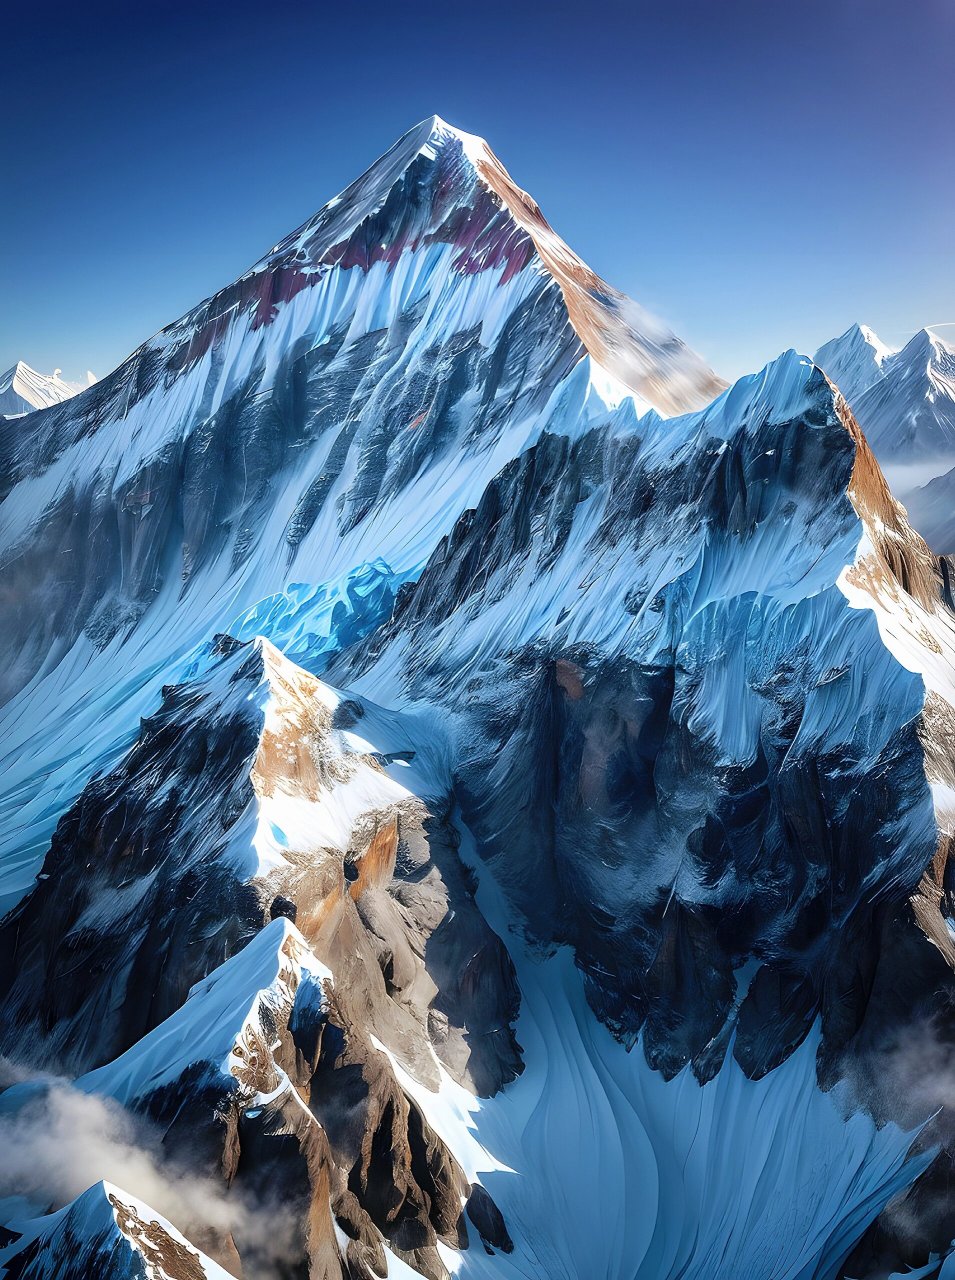 雪山景色,主峰的样貌 以某处雪山为模板刻画出来的雪峰山脉